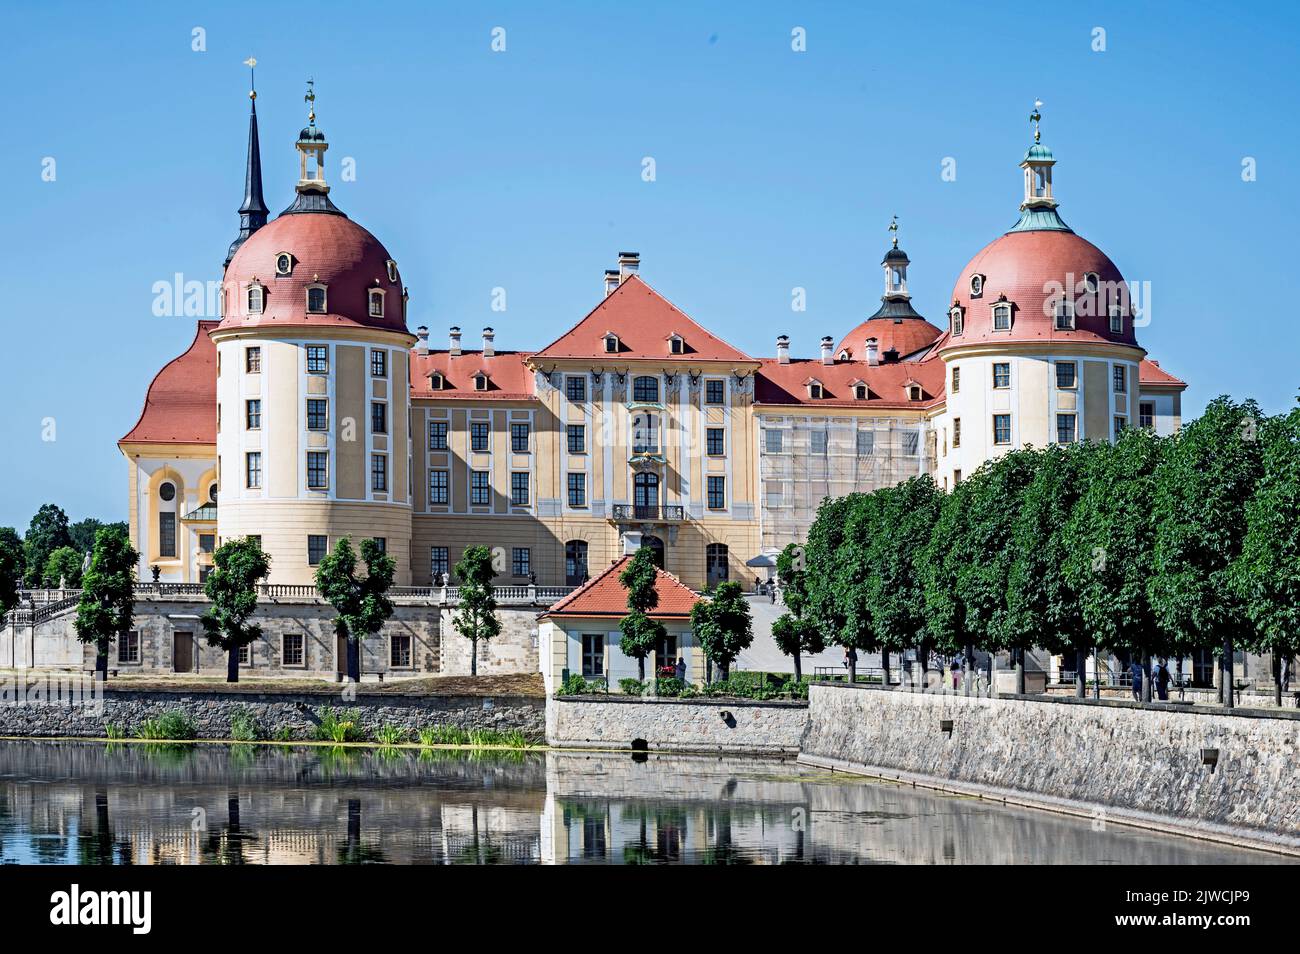 Schloss Moritzburg, Sachsen - Castello di Moritzburg vicino a Dresda, Sassonia, Germania Foto Stock